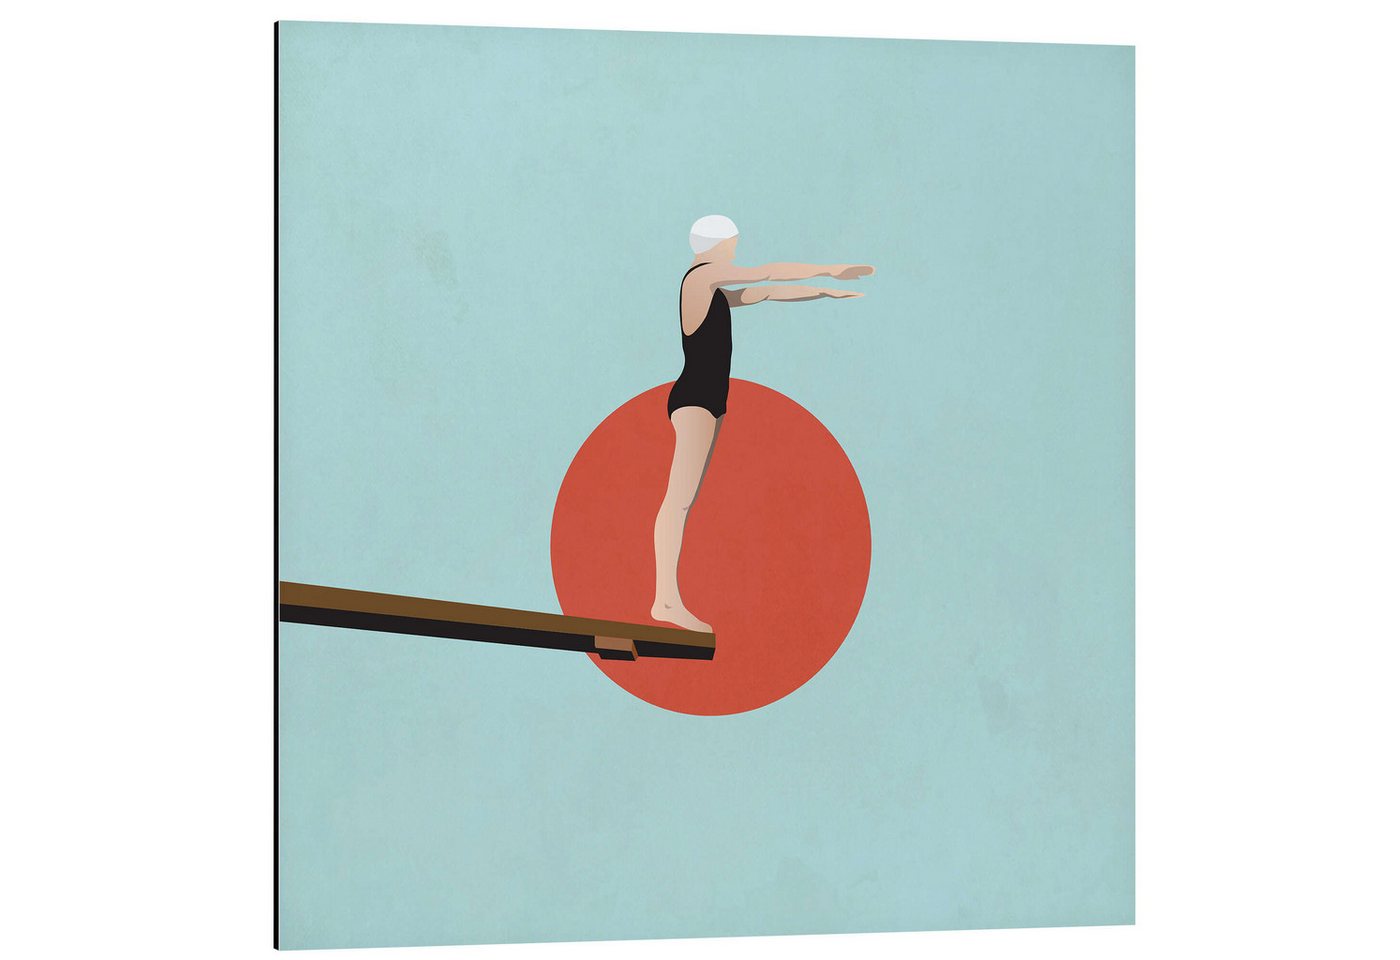 Posterlounge Alu-Dibond-Druck Layla Oz, Sprungbrett, Badezimmer Maritim Illustration von Posterlounge